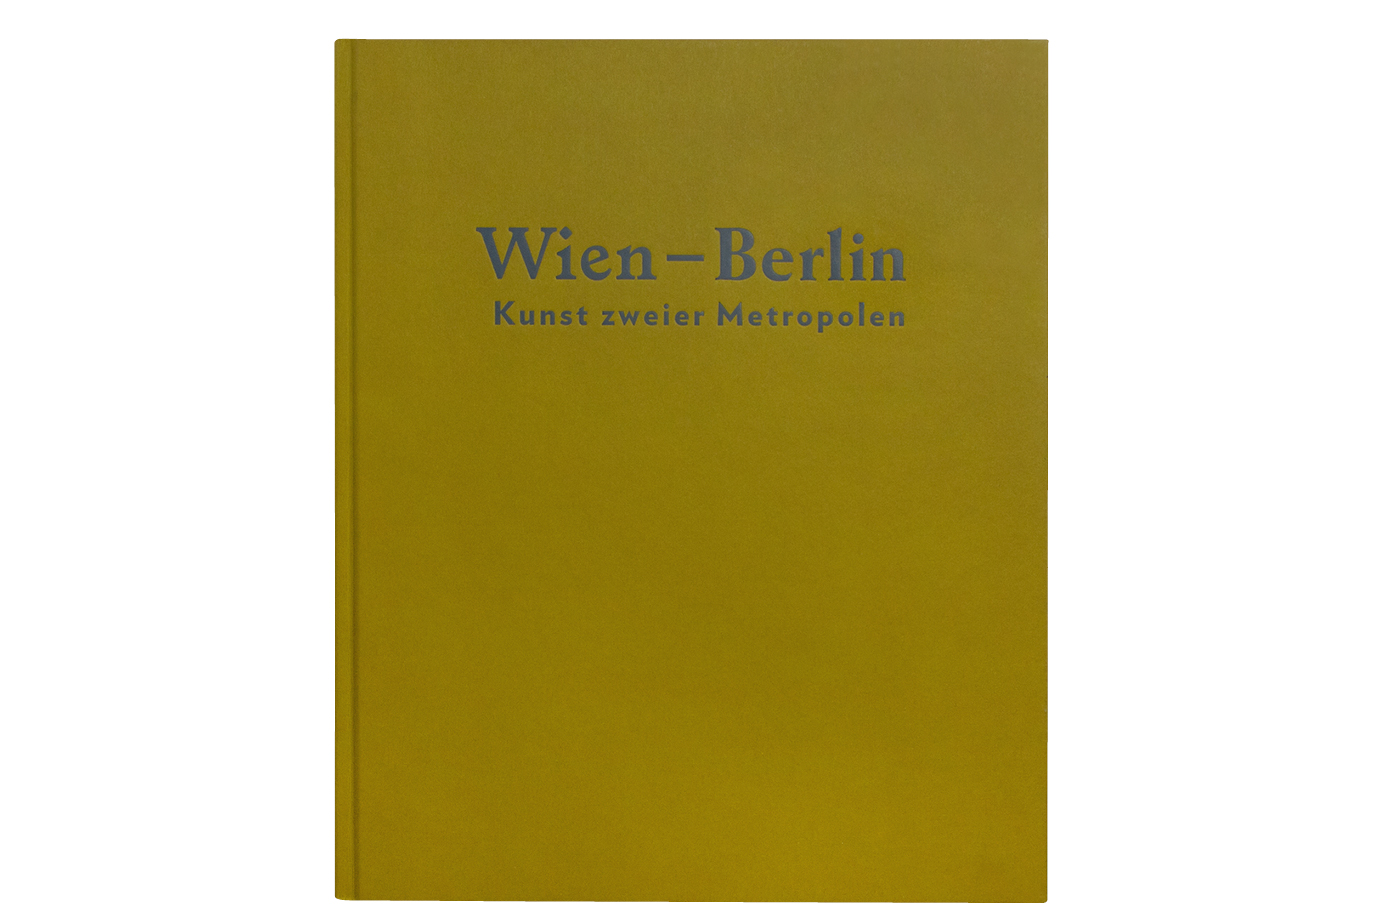 https://e-o-t.de/wordpress/wp-content/uploads/2017/02/2014_eot-WienBerlin-Book-03.jpg